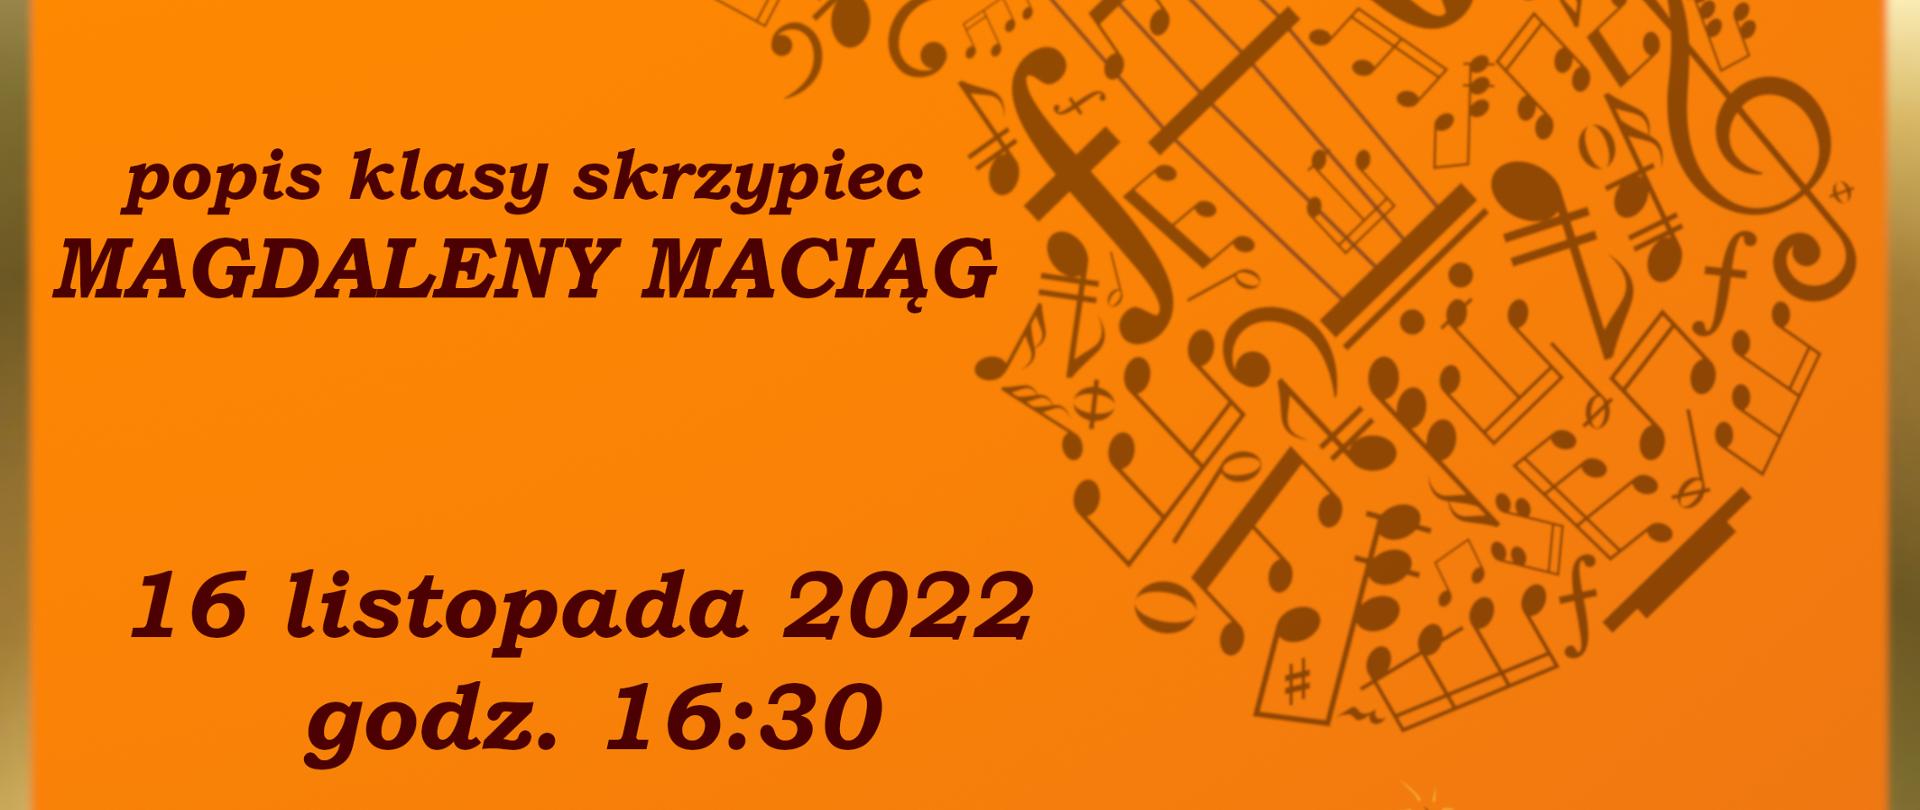 plakat popisu klasy skrzypiec Magdaleny Maciąg w dniu 16.11.2022. Nazwa popisu to " Skrzypcowe Przekomarzanki". Tło plakatu jest pomarańczowe i jest na nim komar.